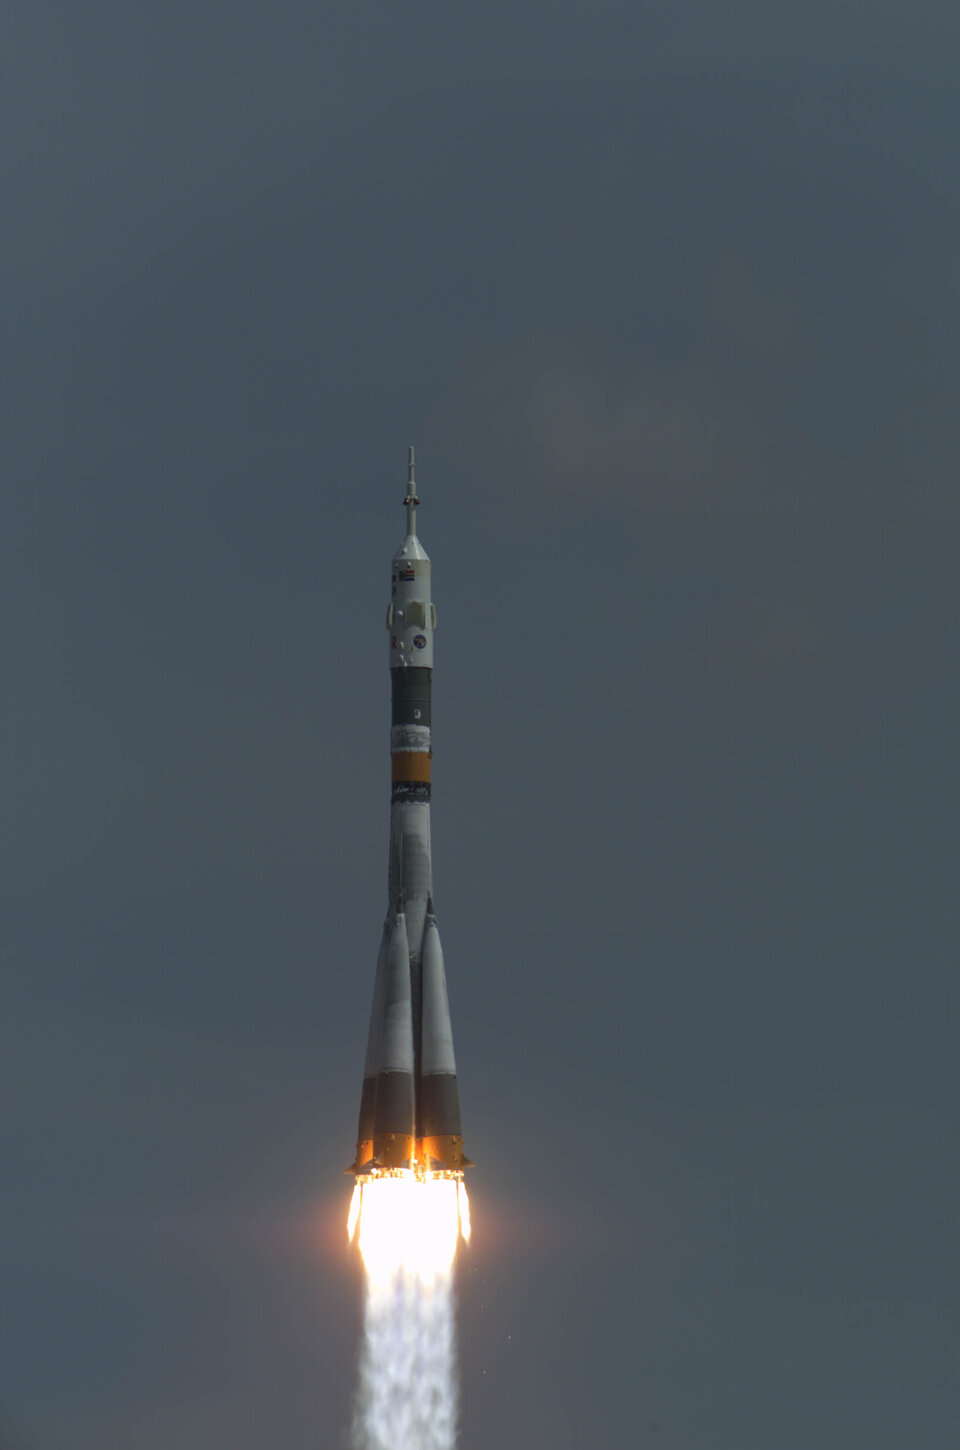 De lancering van de Russische sojoez-raket voor de Marco Polo missie